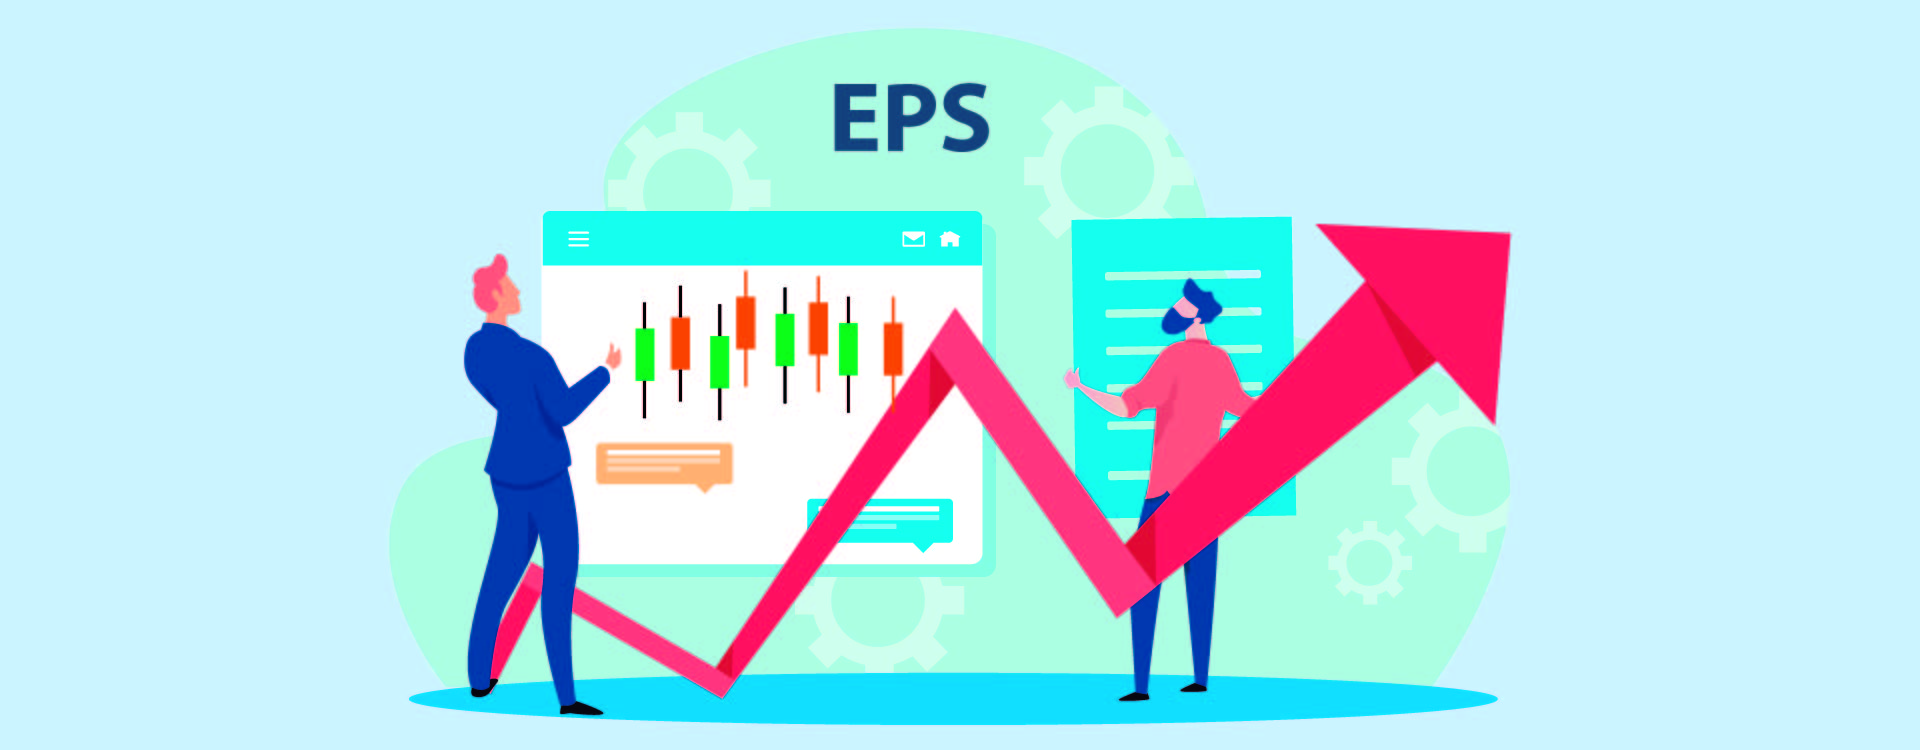 EPS- Earning Per Share, Guide For Investors